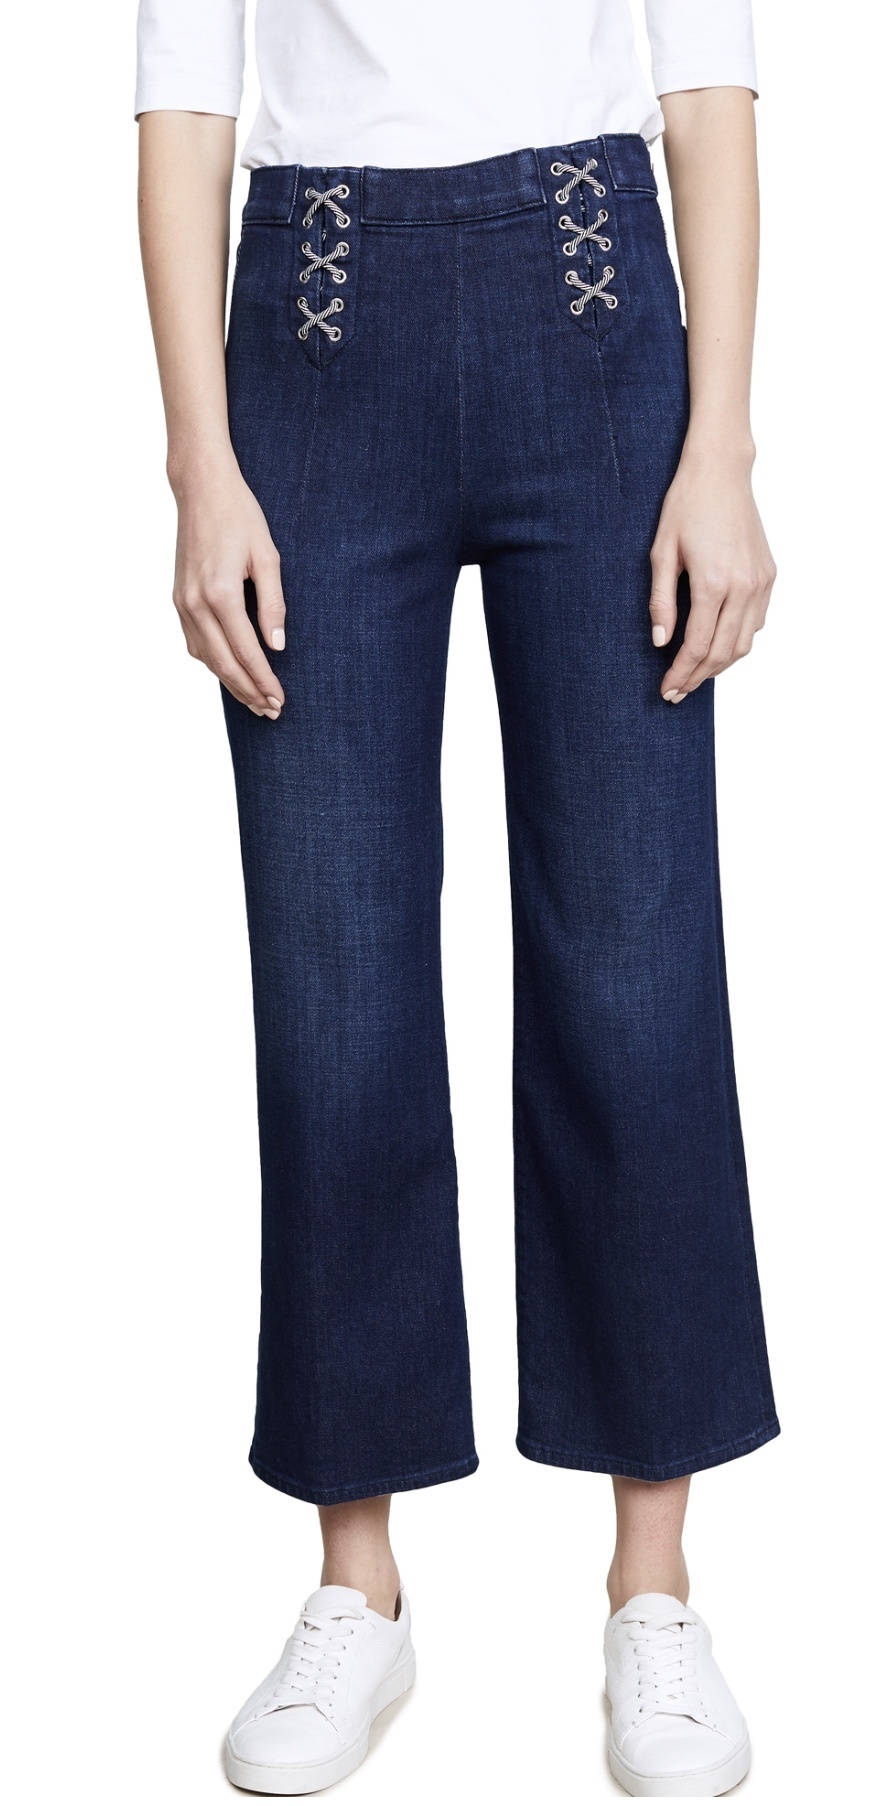 Джинсы J Brand, размер джинсовый 31